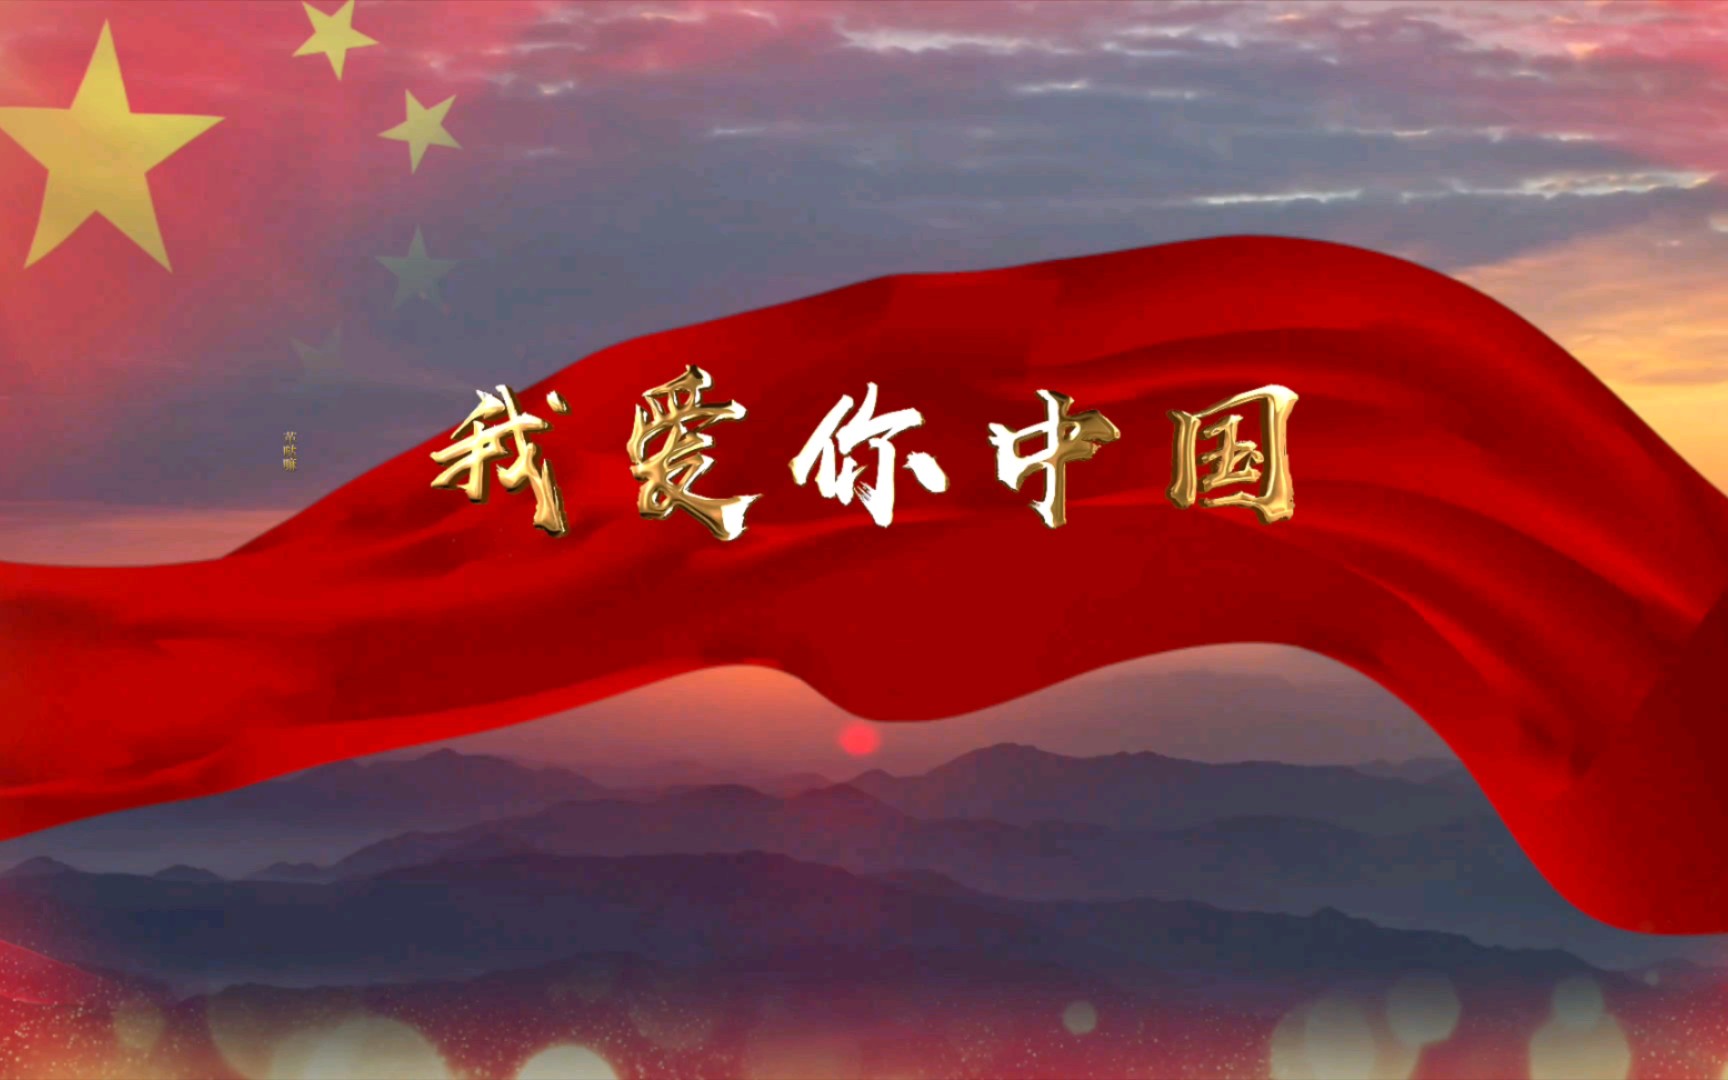 我爱你中国汪峰版合唱歌曲舞台背景视频